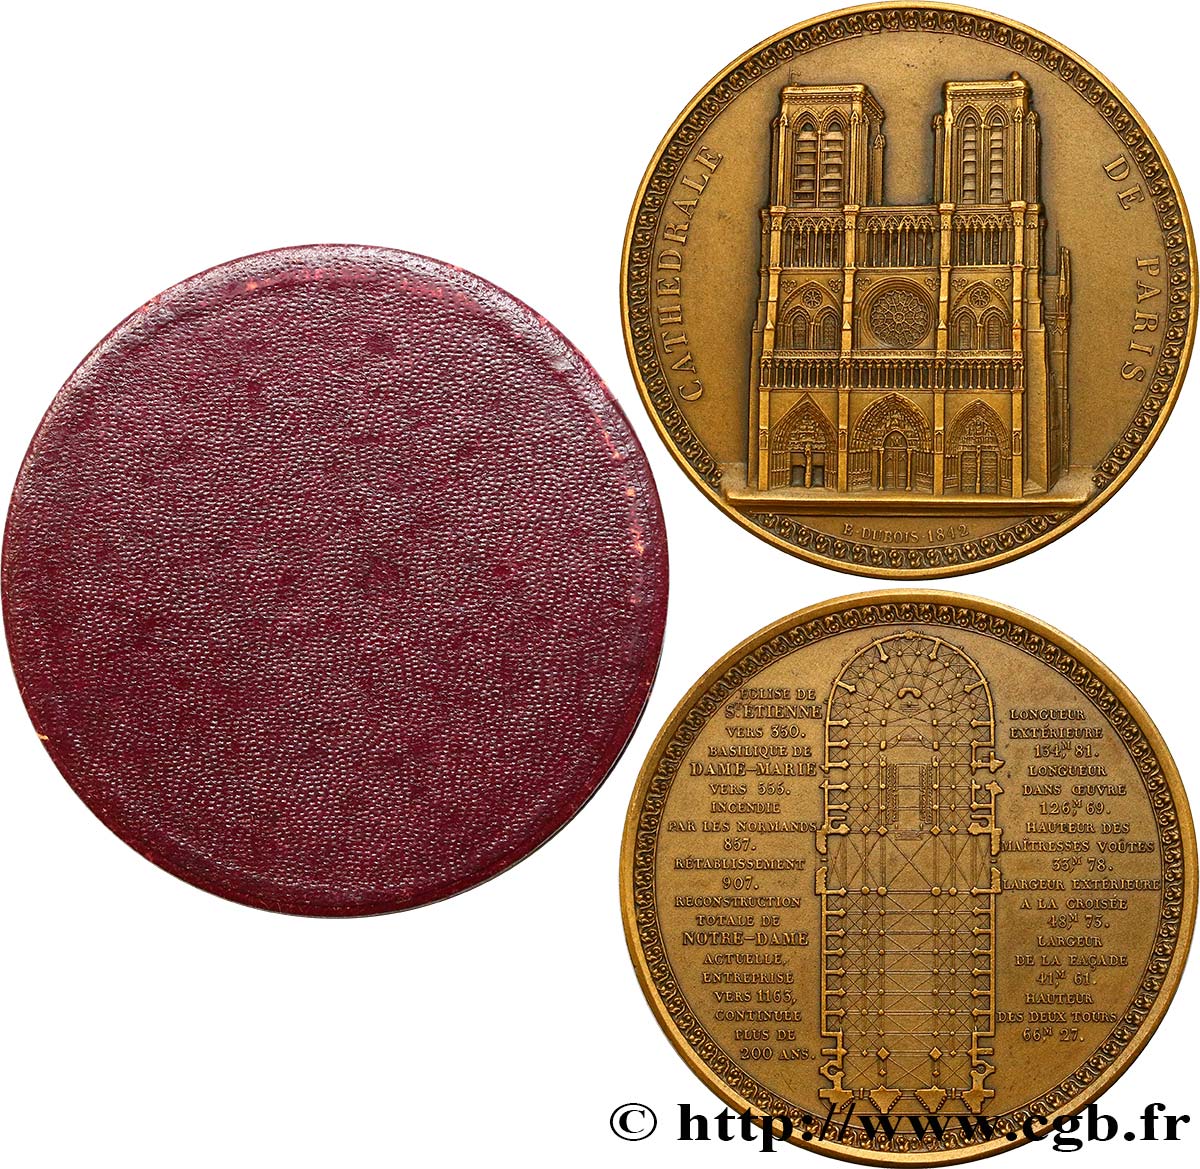 LOUIS-PHILIPPE Ier Médaille de Notre-Dame de Paris SUP